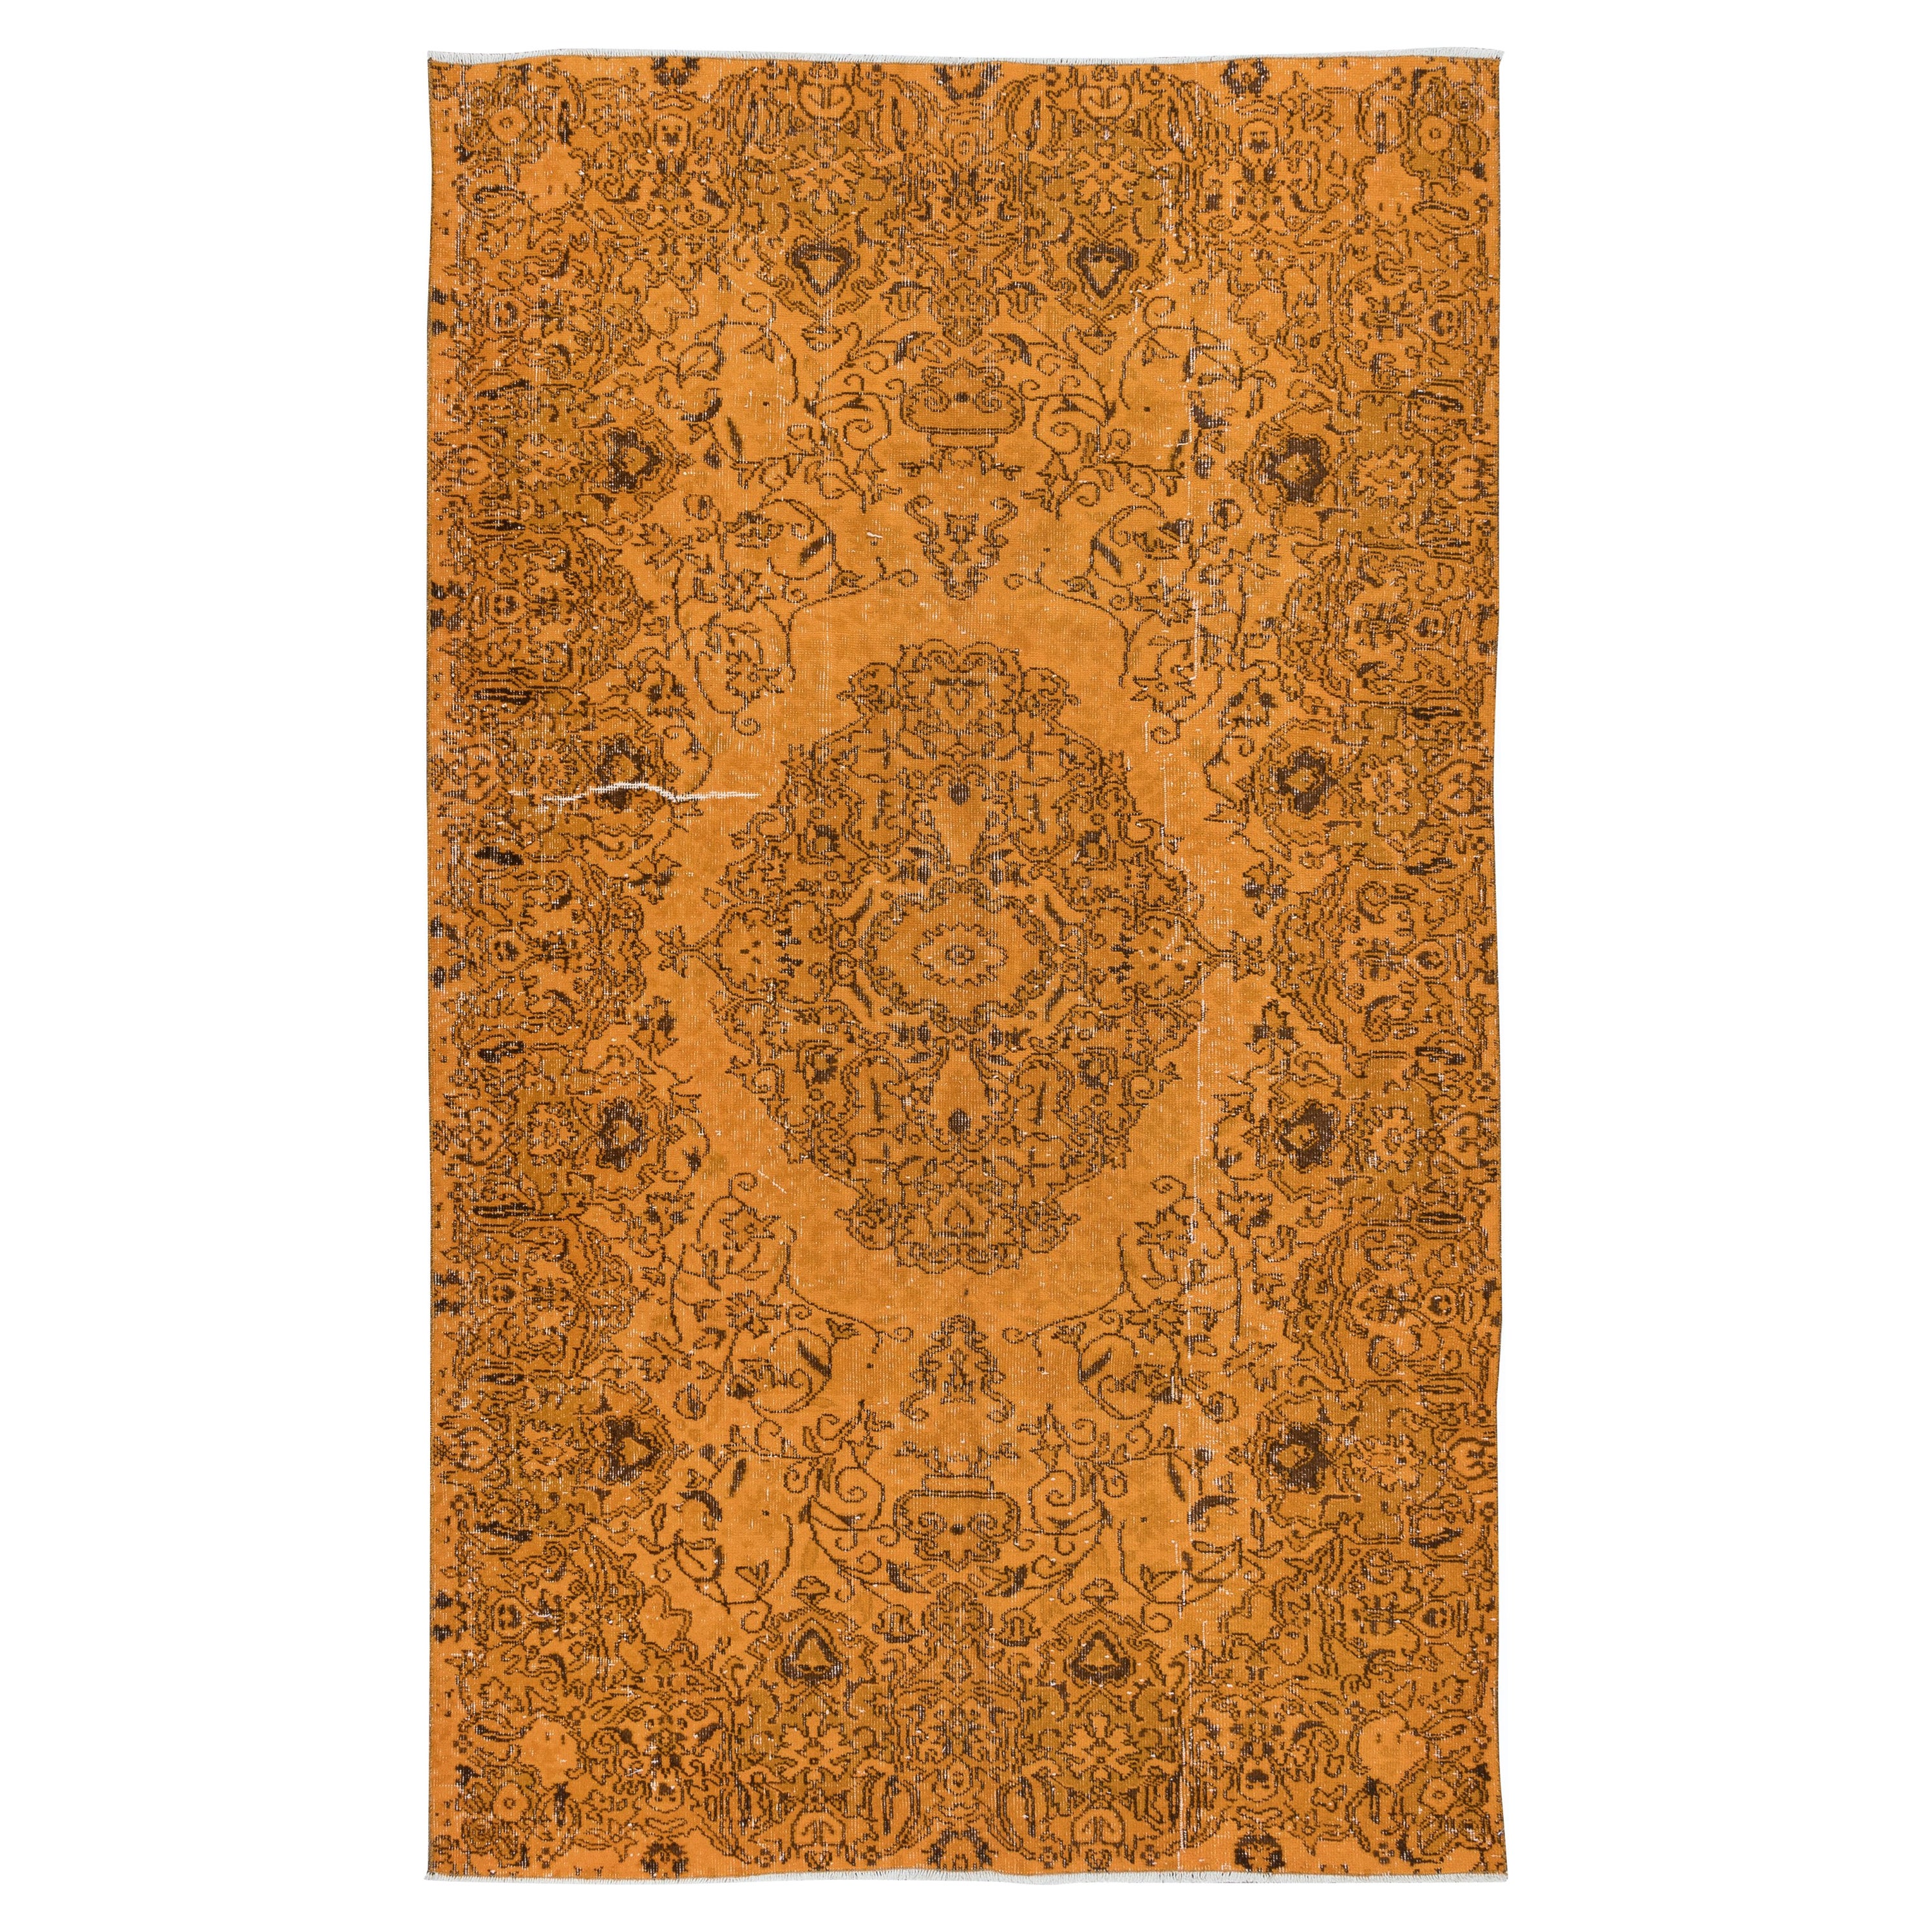 Handgefertigter orangefarbener Teppich in 5.2x8.4 Ft aus der Türkei, moderner Teppich im Medaillon-Design